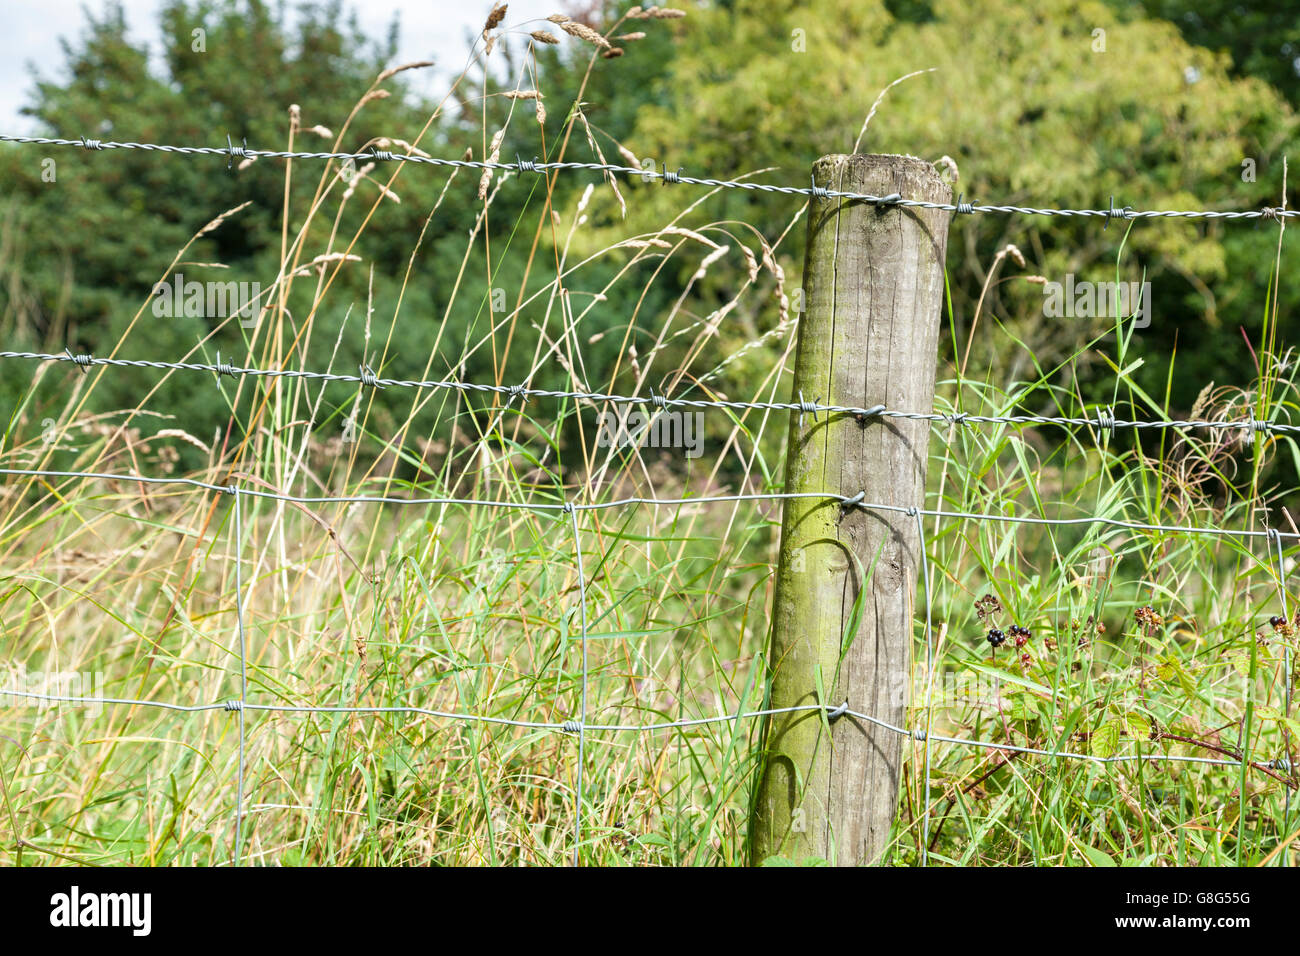 Gros plan d'une clôture en fil barbelé agrafée à un poste en bois au bord d'un champ dans la campagne, Peak District, Derbyshire, Angleterre, RU Banque D'Images